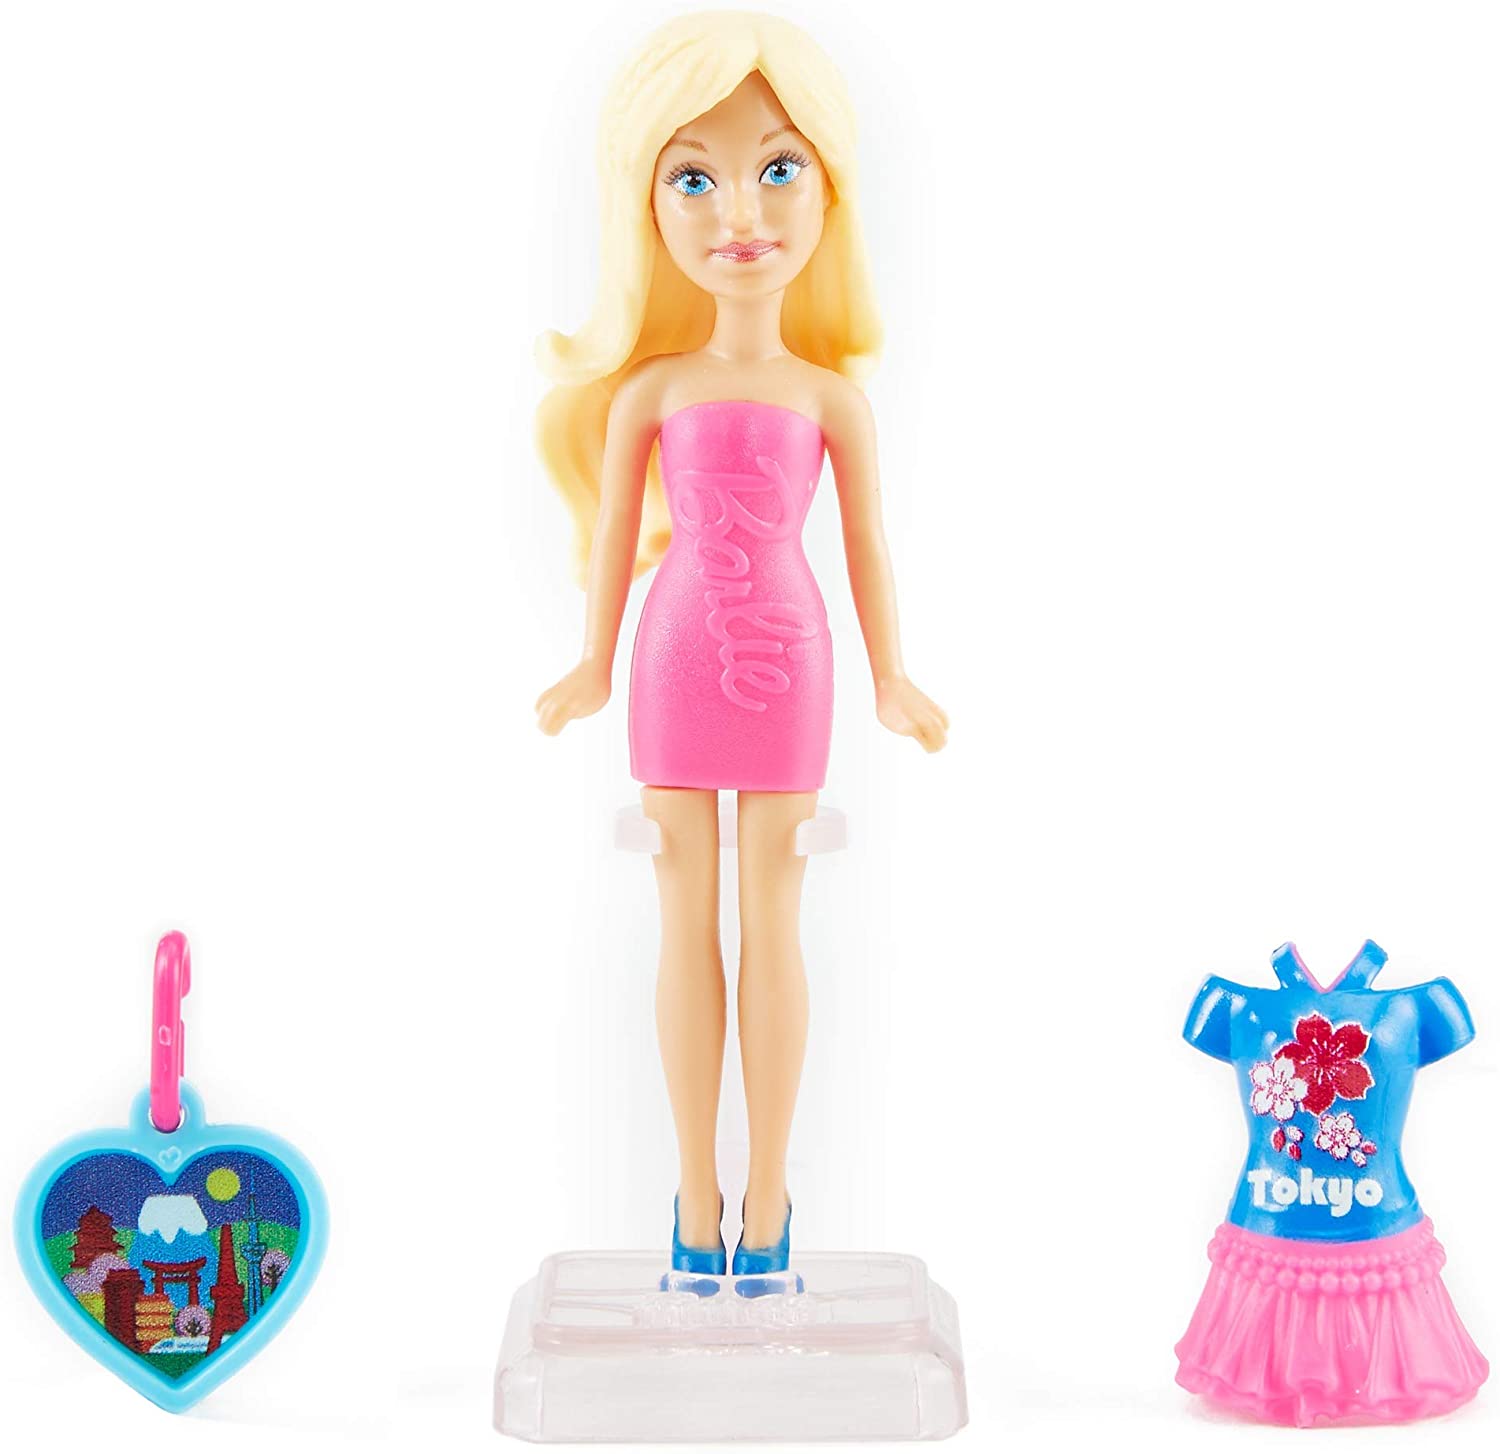 Мини куклы барби. Кукла Барби путешественница. Игрушка Barbie мини-куклы путешественники. Пластмассовые куклы Барби.